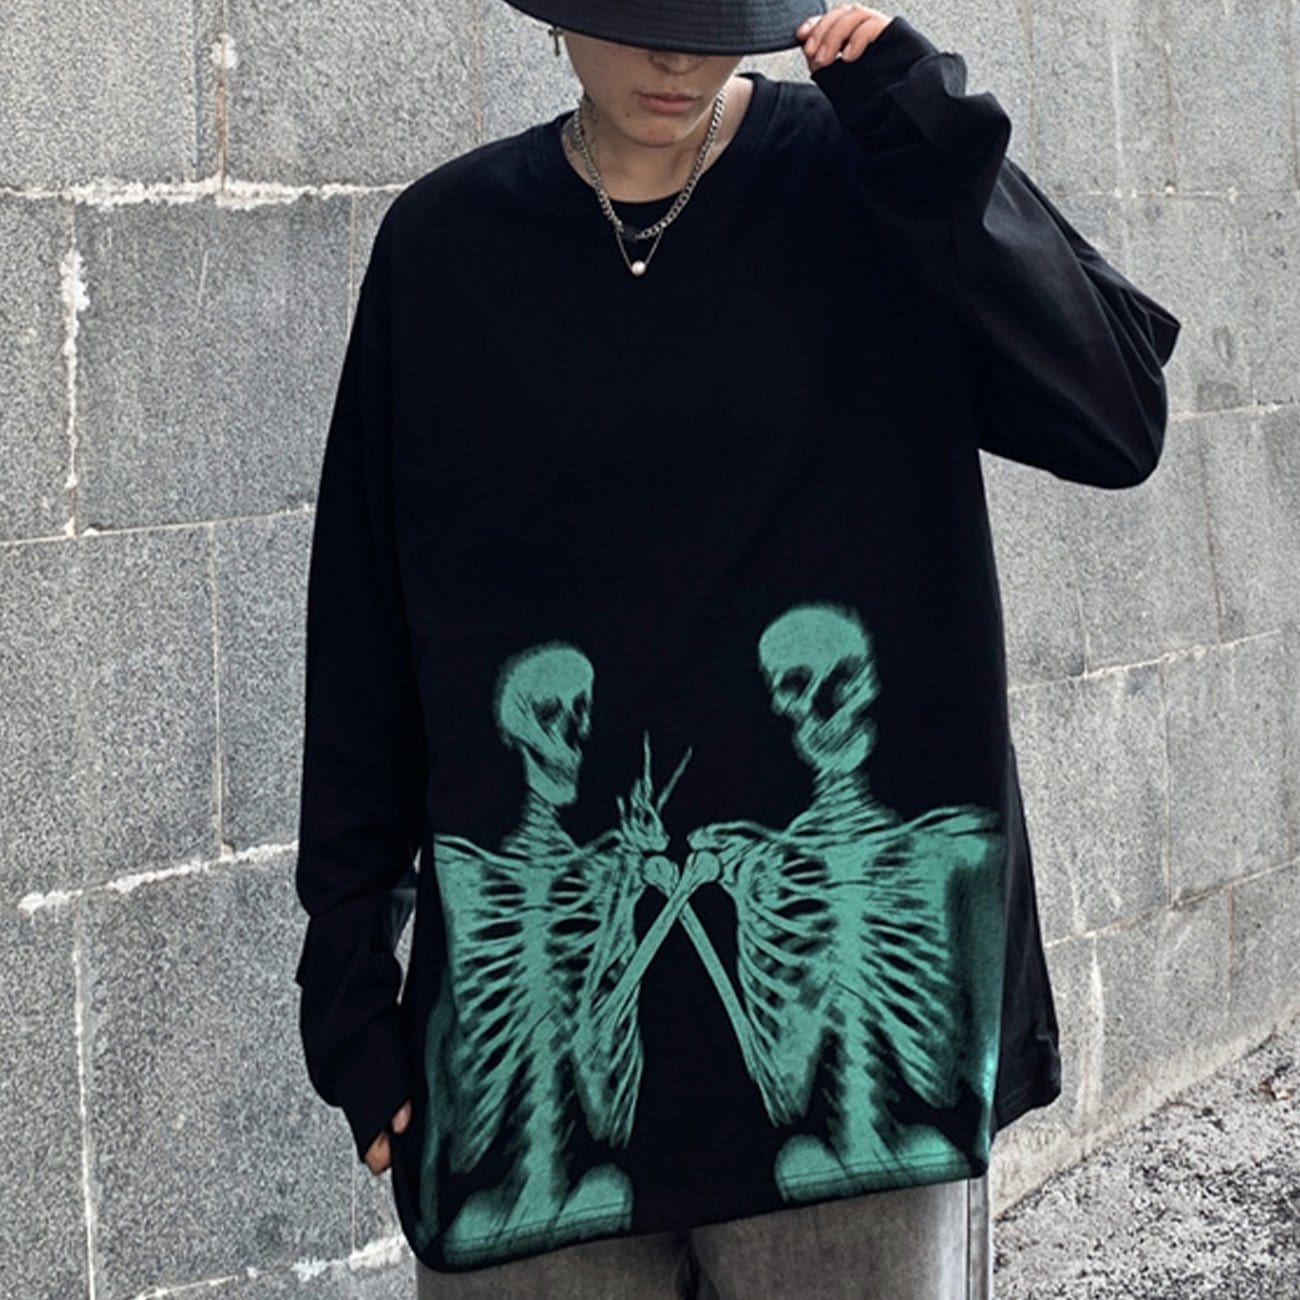 TO Dark Skeleton Taking Pictures Sweatshirt